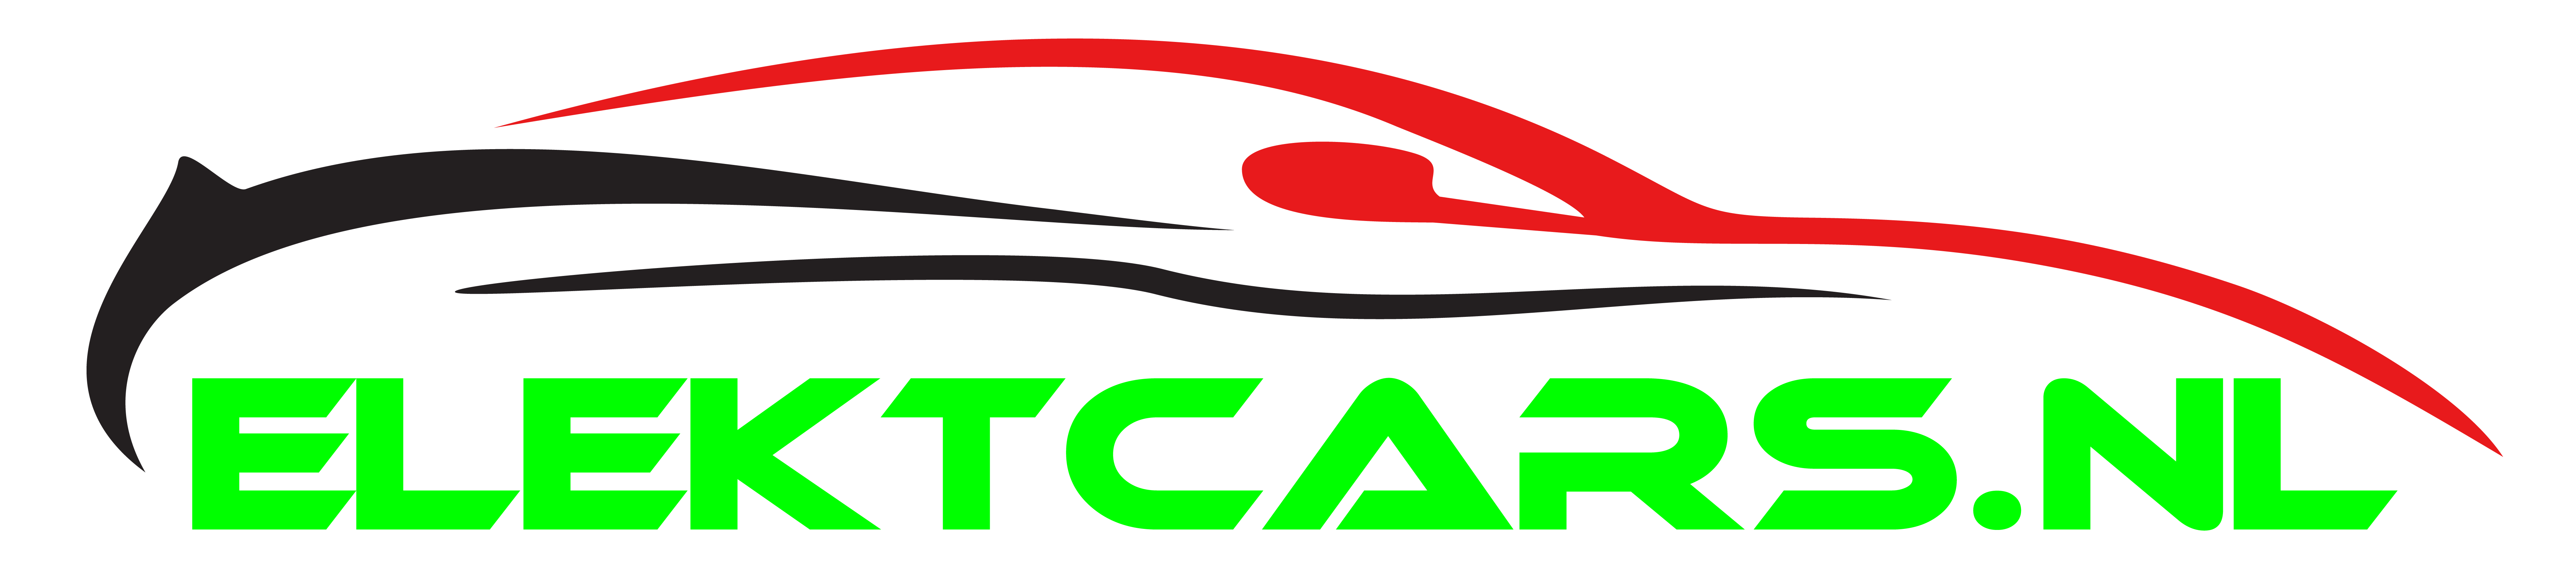 Logo Design Nisatutucu Elektcars